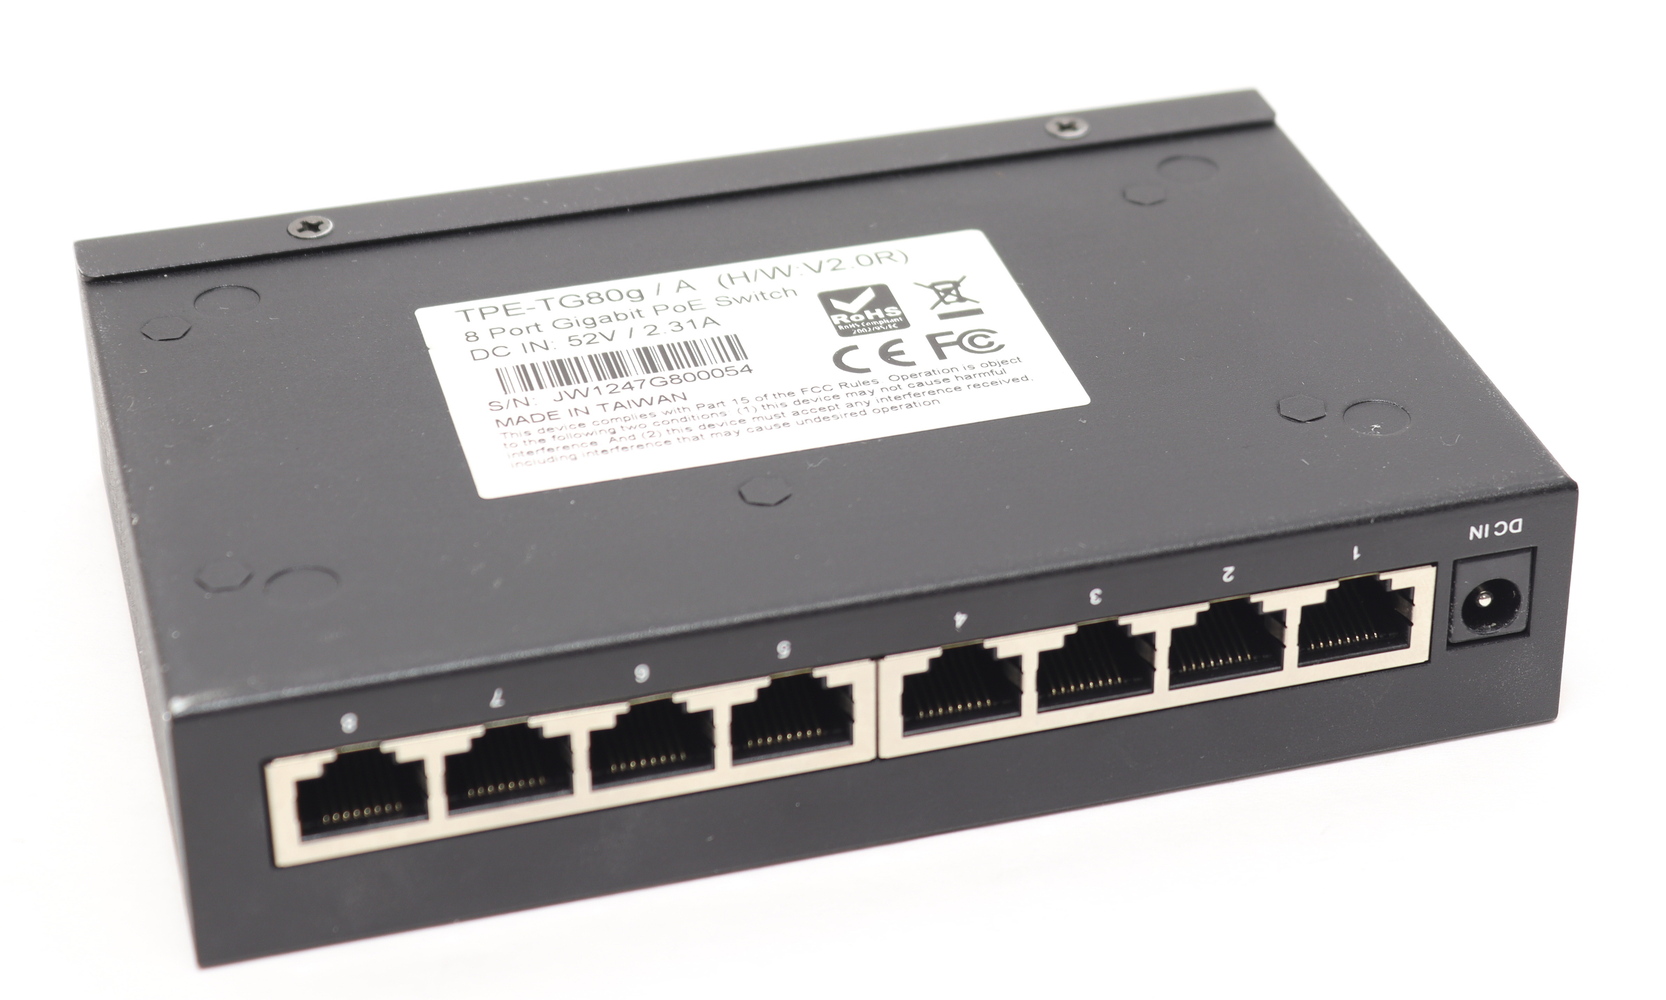 TRENDnet TEG-S16Dg 8-Port Gigabit GreenNet Switch w/ Power Cord